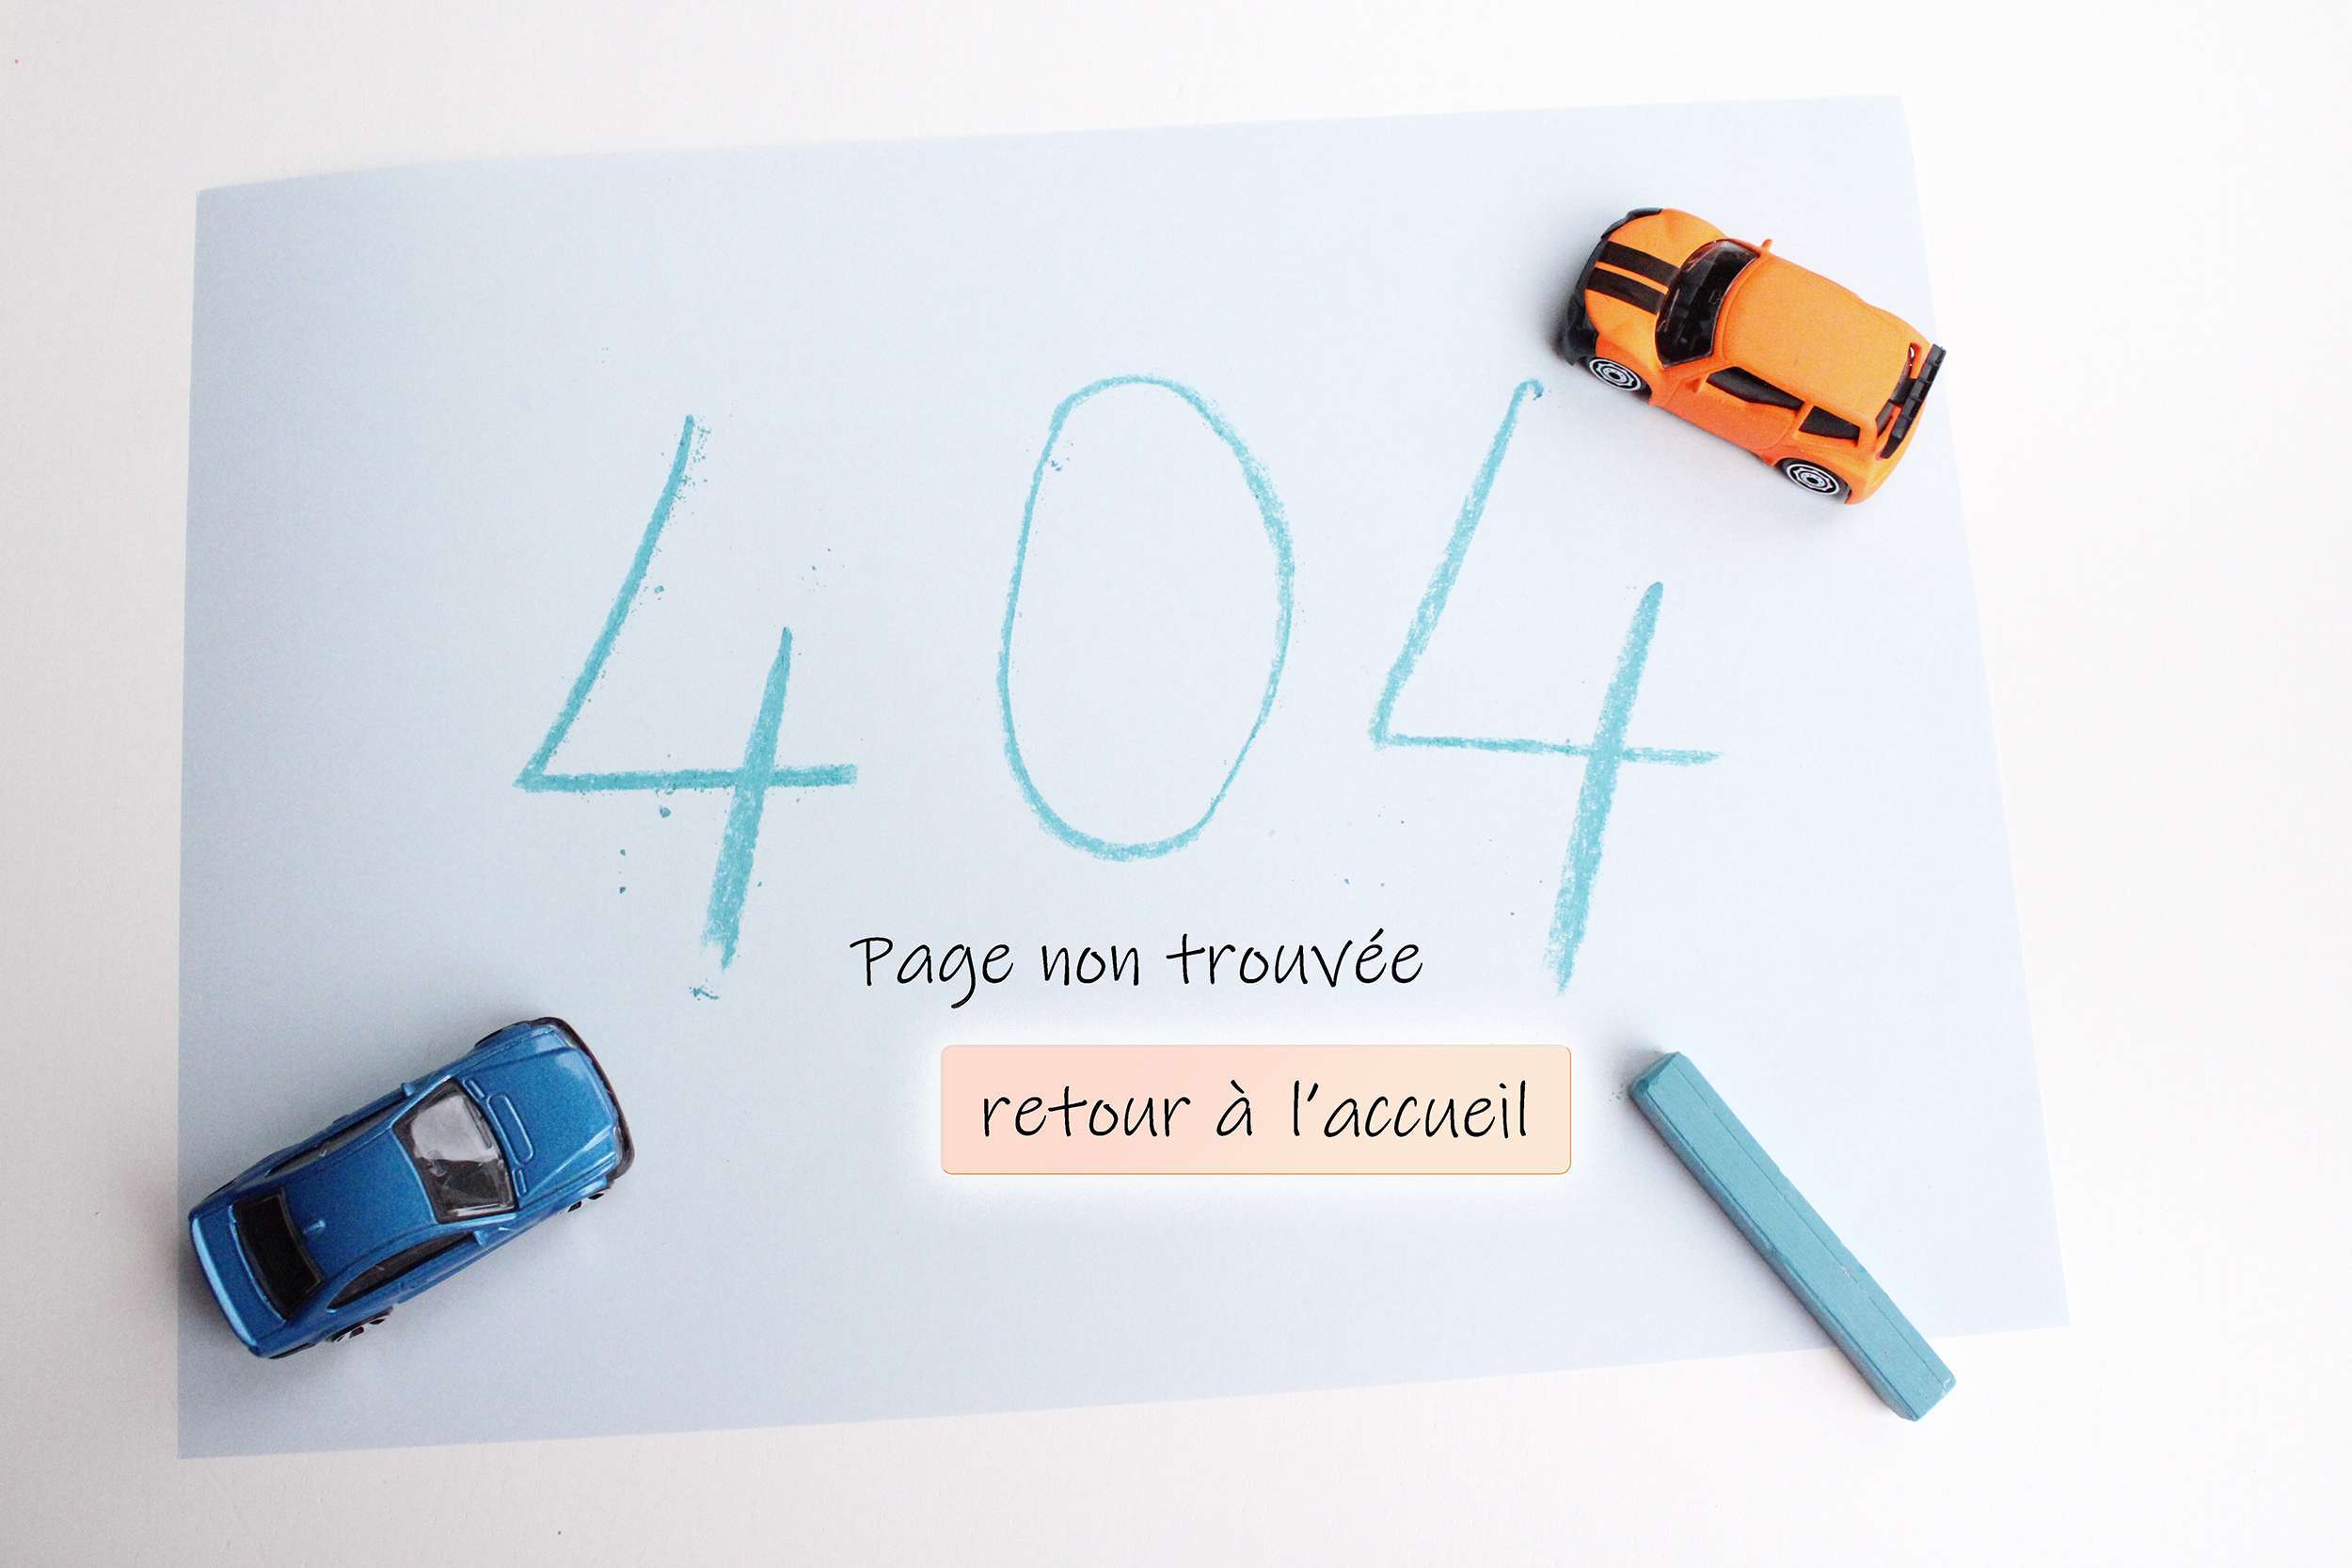 How to design an 404 page? 32Steps.com